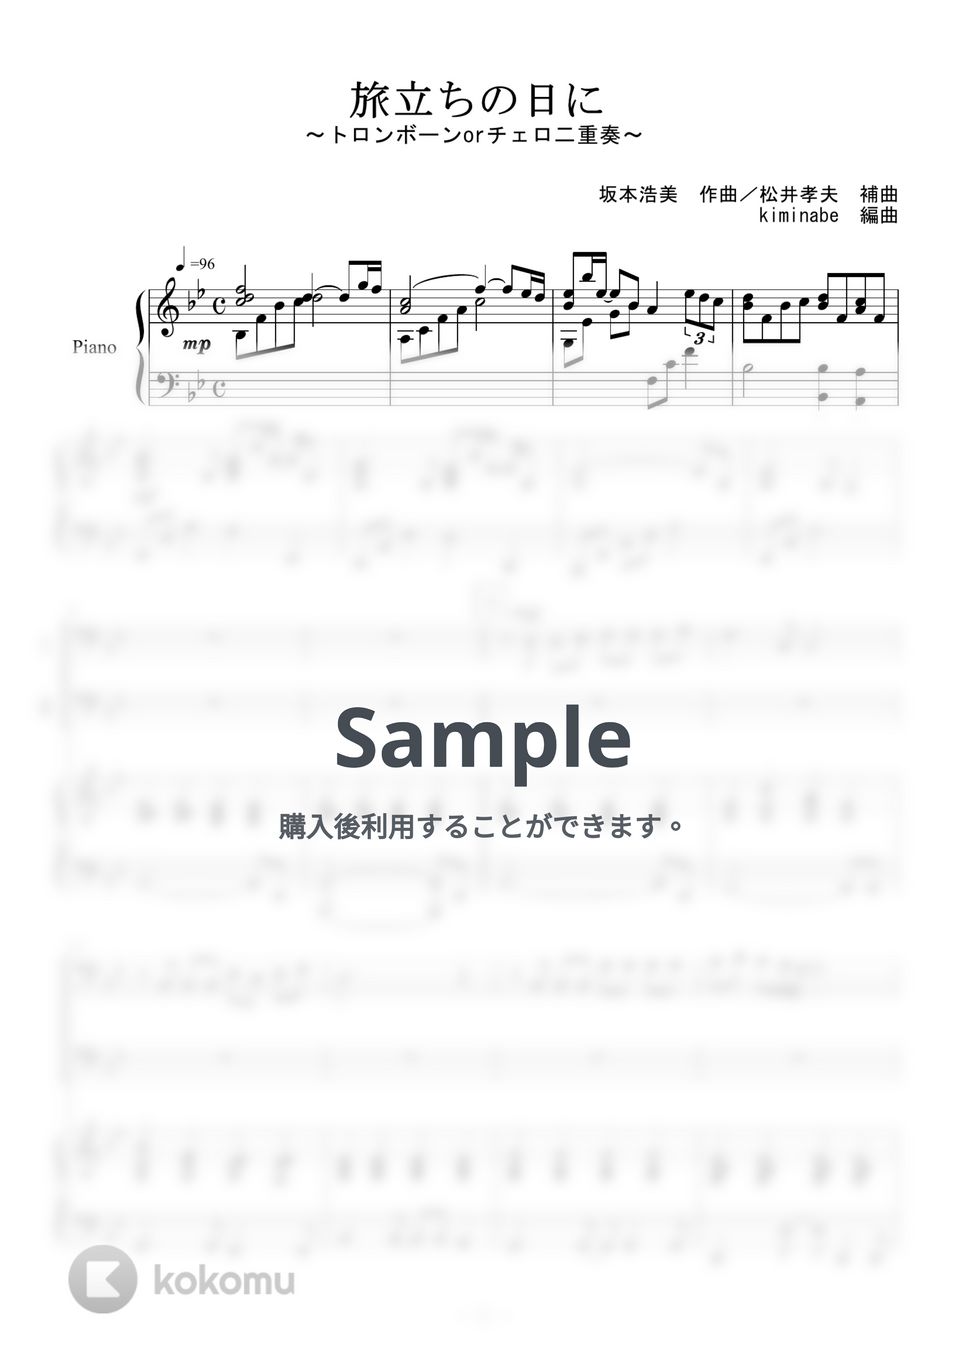 坂本浩美 - 旅立ちの日に (トロンボーンorチェロ二重奏) by kiminabe